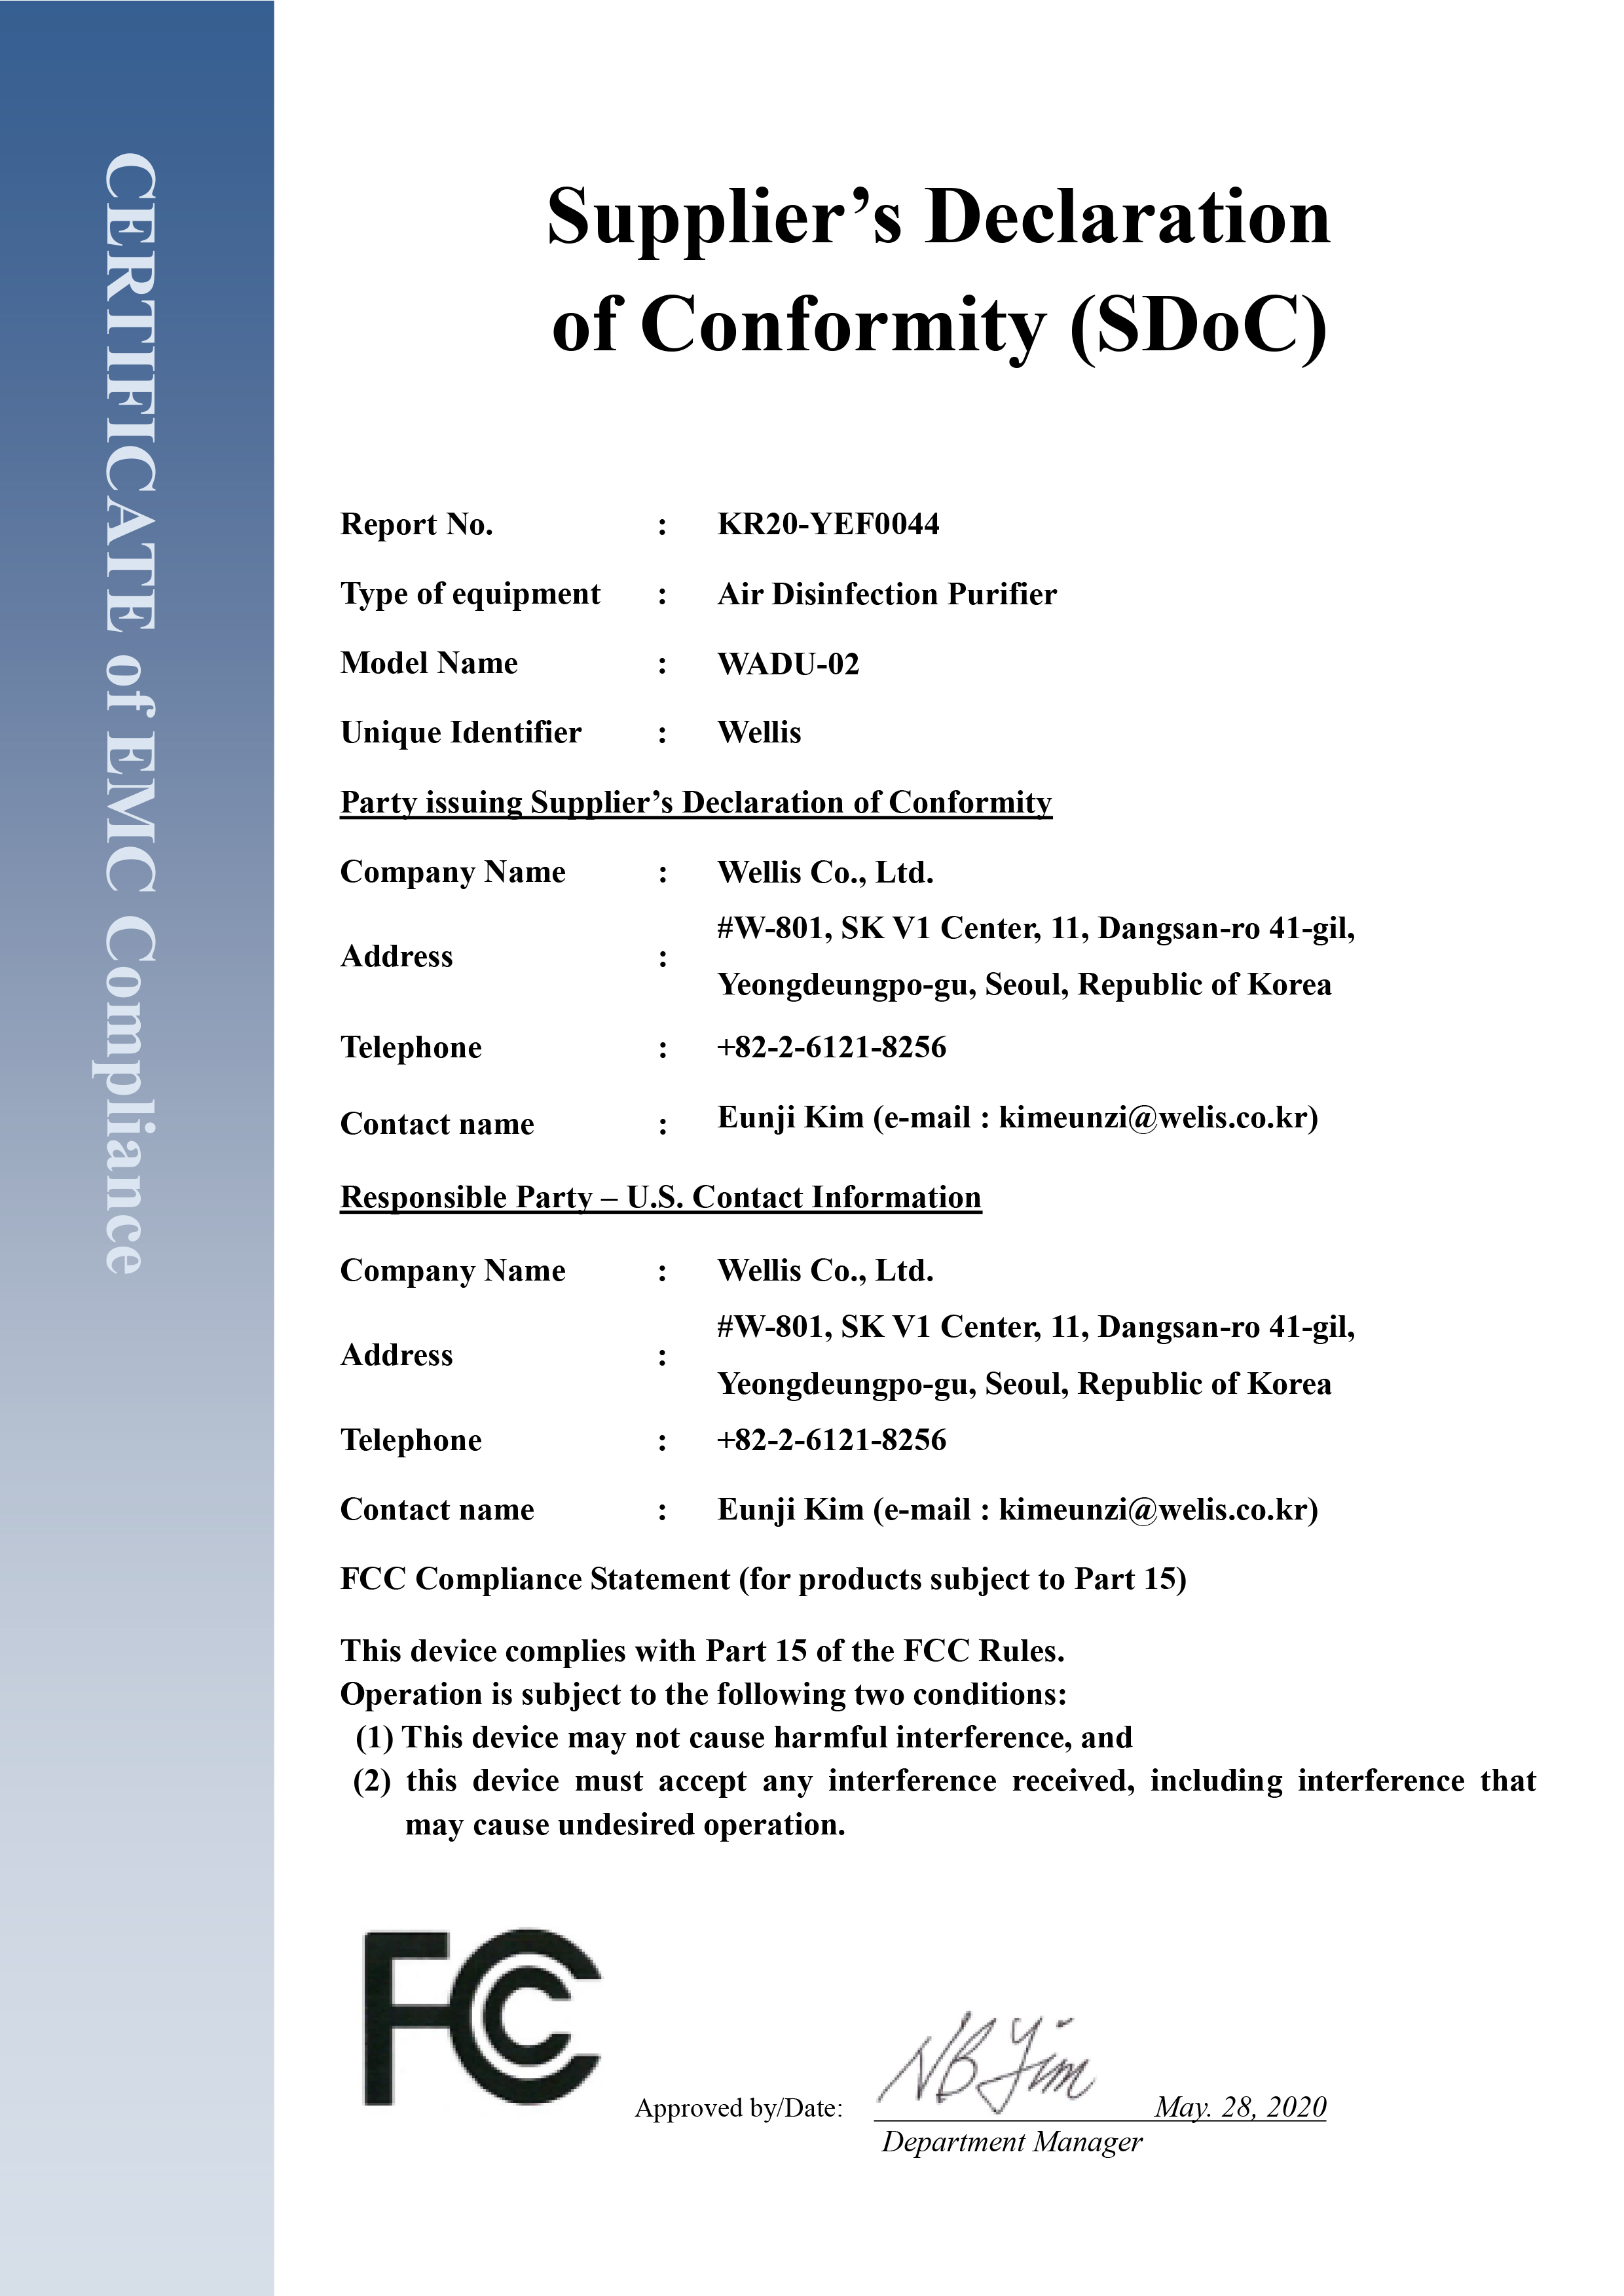 FCC EMC Certificate